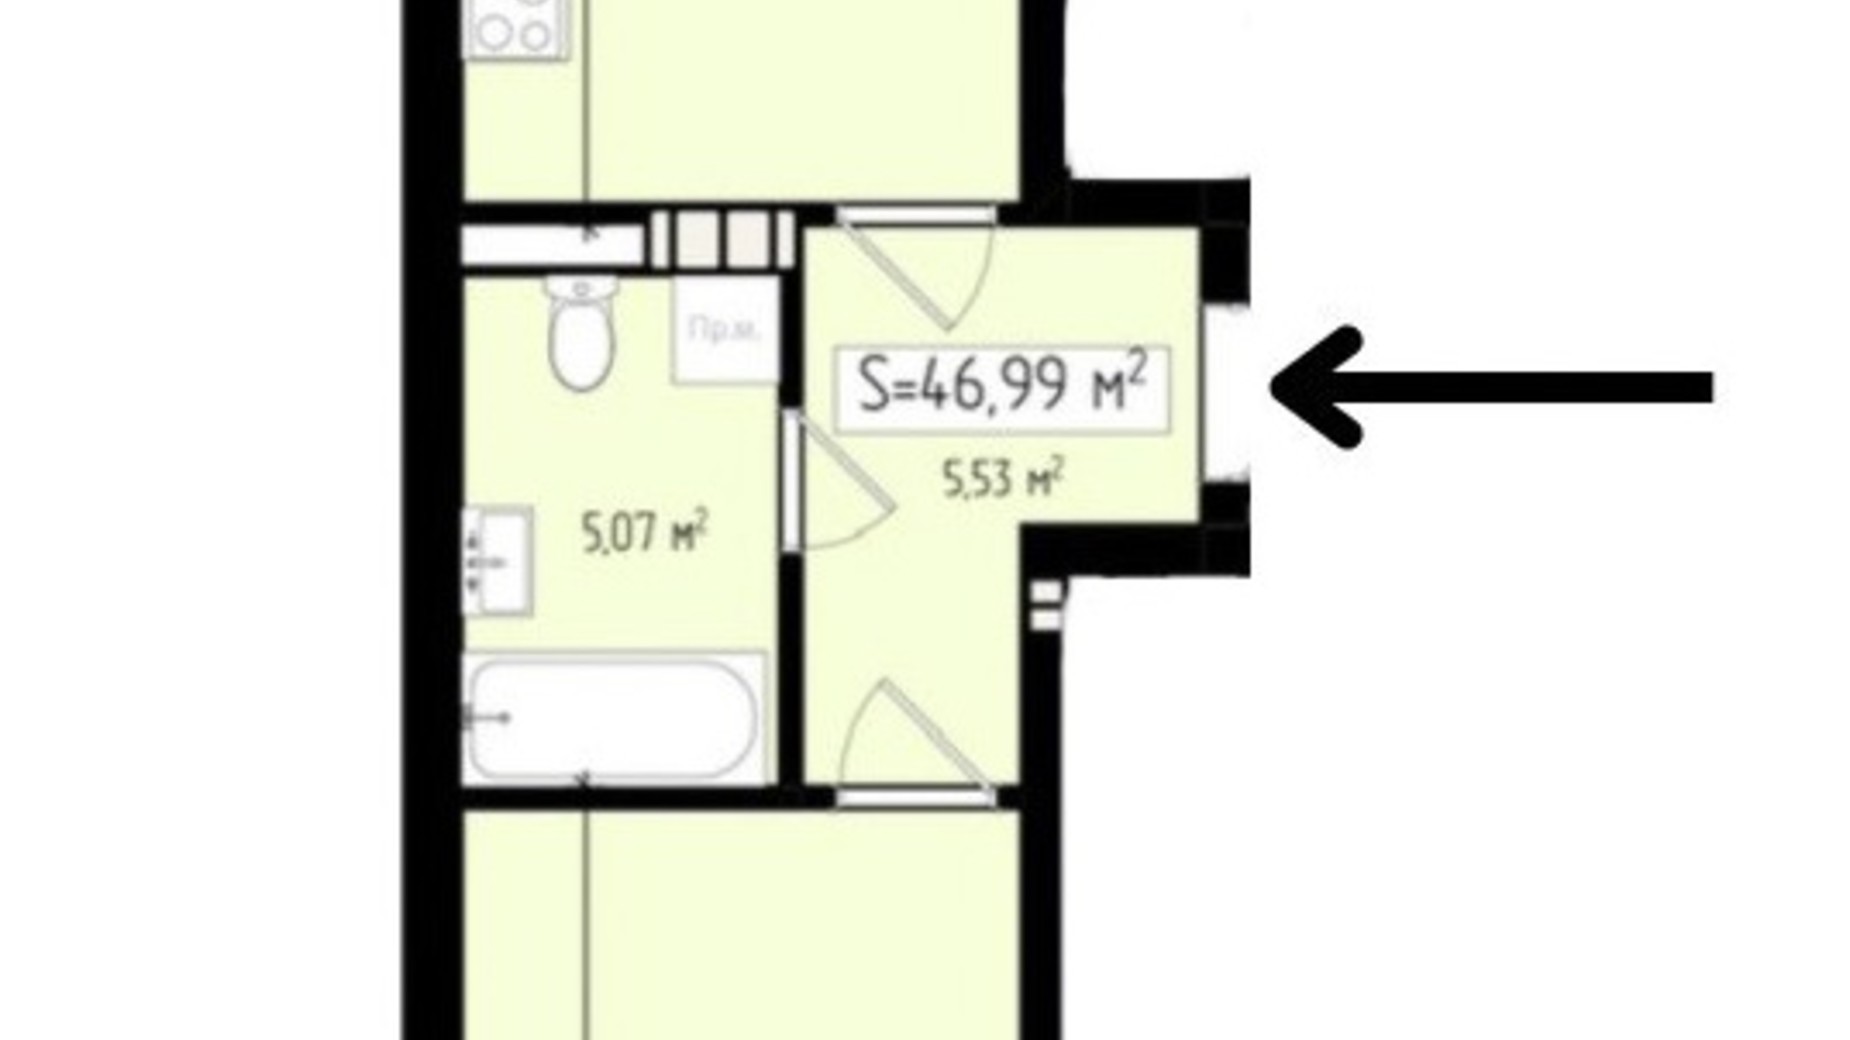 Планировка 1-комнатной квартиры в ЖК Mala Praha 46.99 м², фото 539582